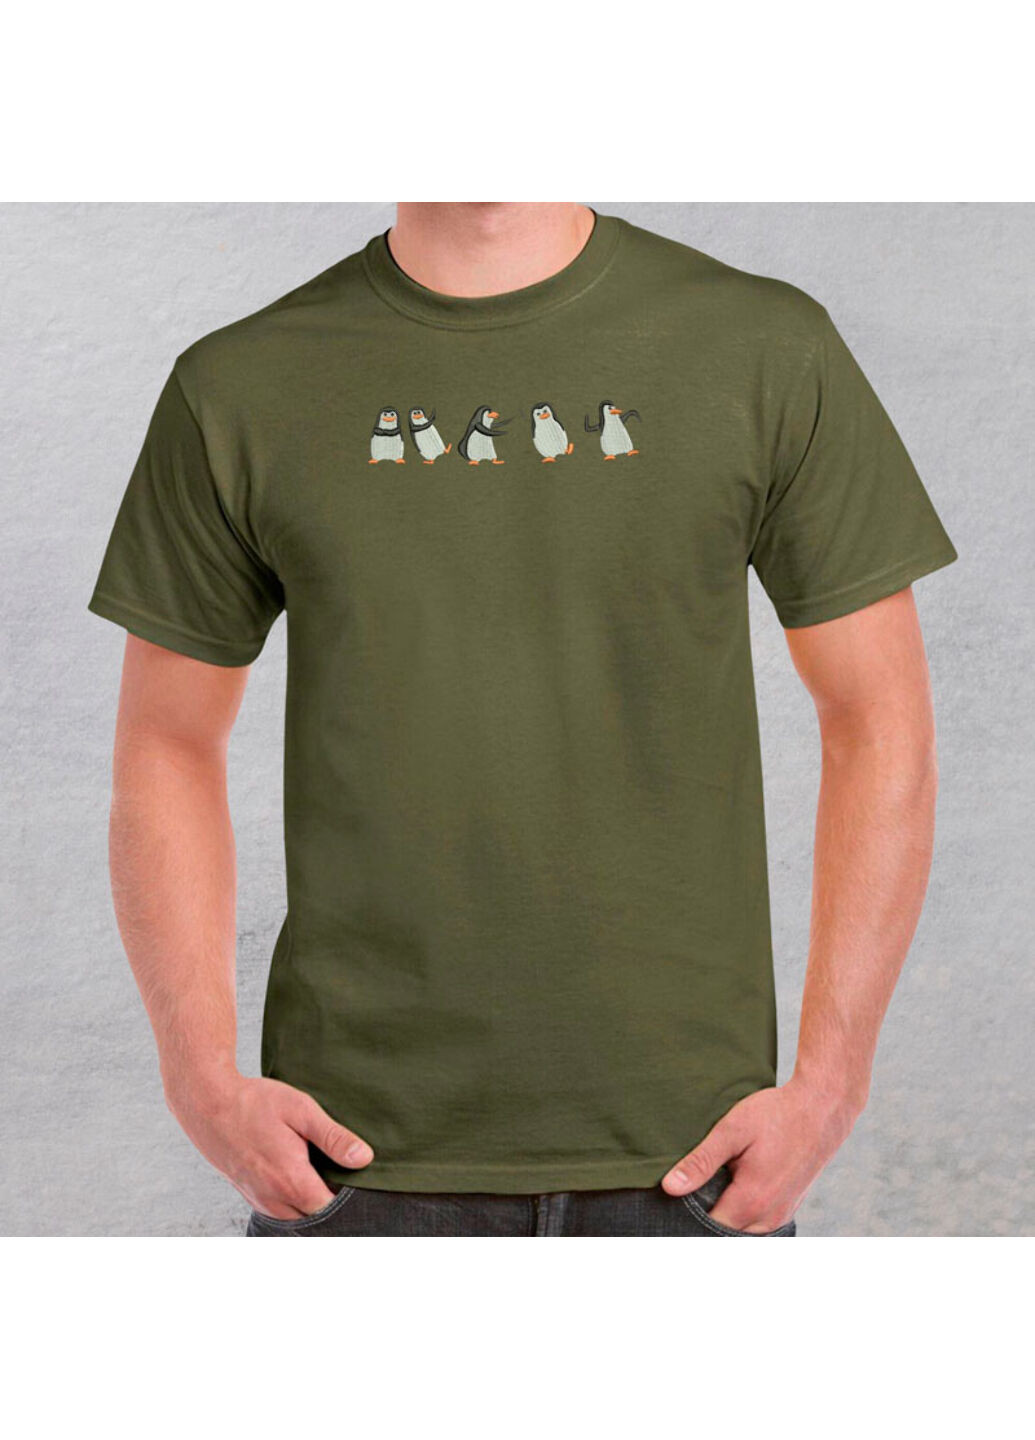 Хаки (оливковая) футболка с вышивкой пингвинов 01-4 мужская хаки 3xl No Brand